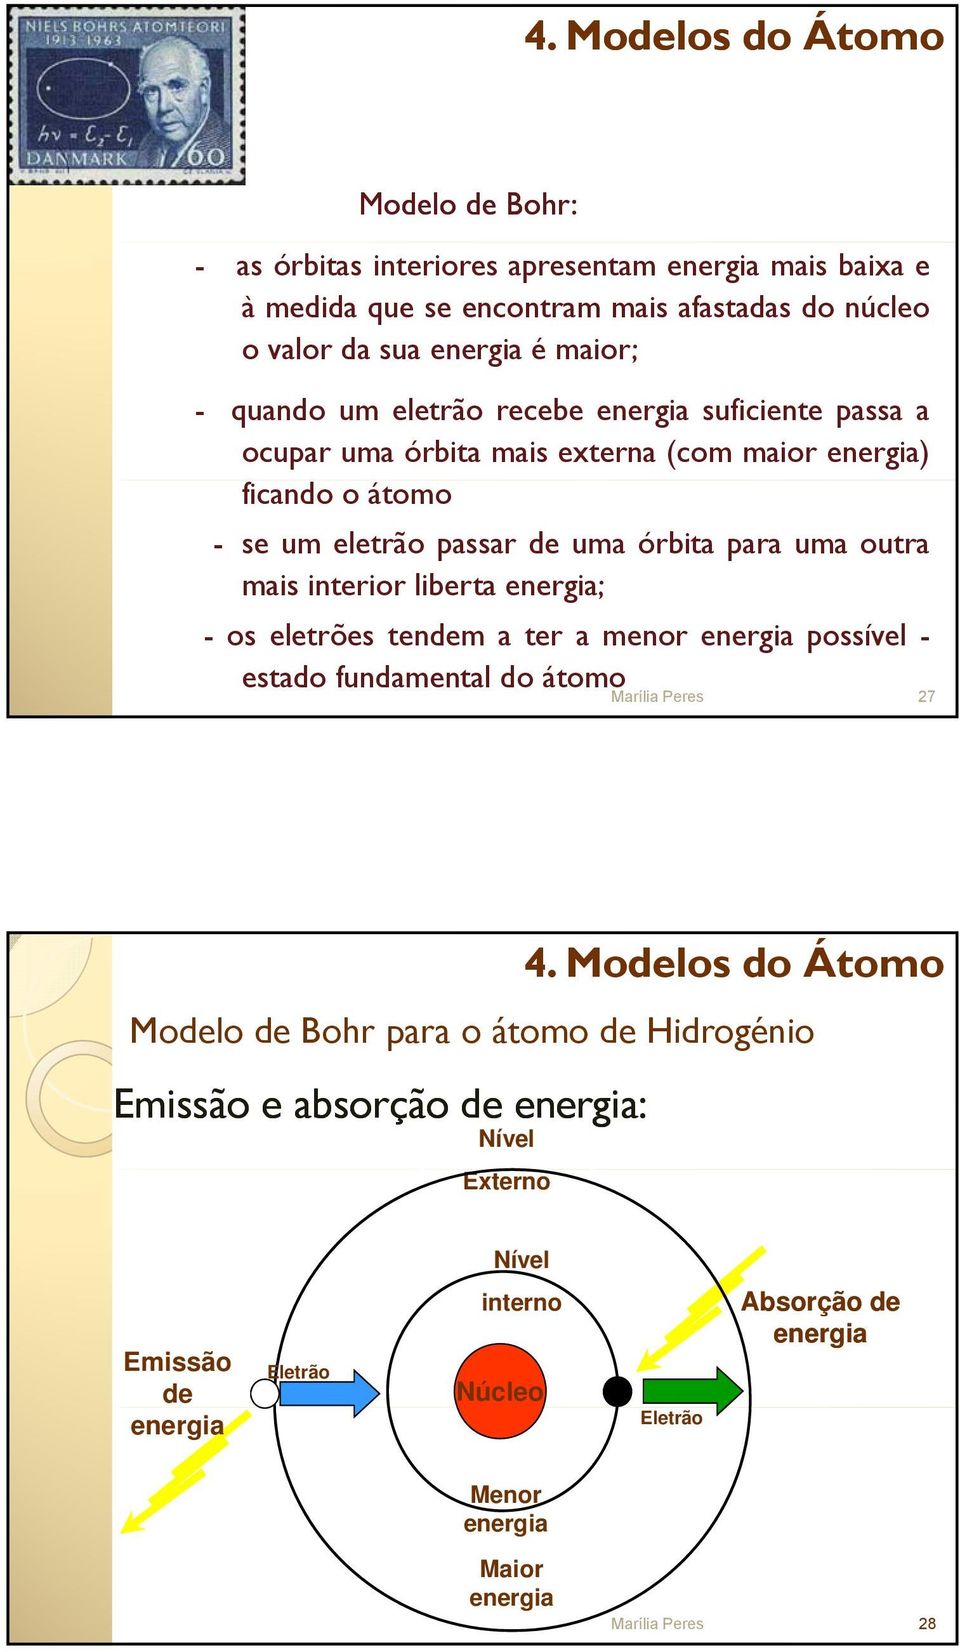 uma outra mais interior liberta energia; - os eletrões tendem a ter a menor energia possível - estado fundamental do átomo.